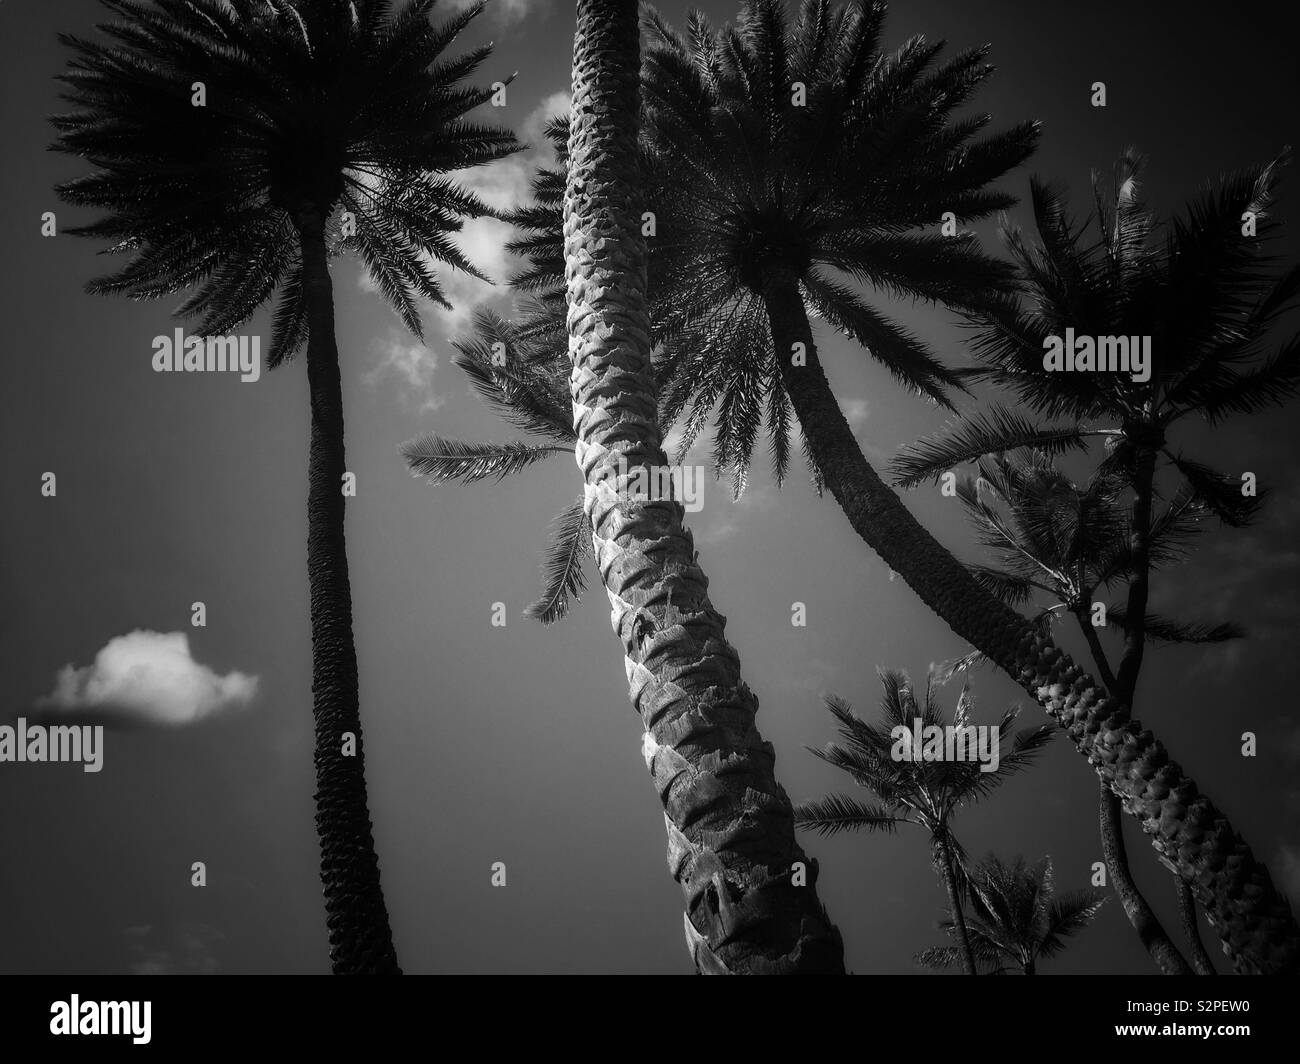 Groupe de palmiers en noir et blanc Banque D'Images